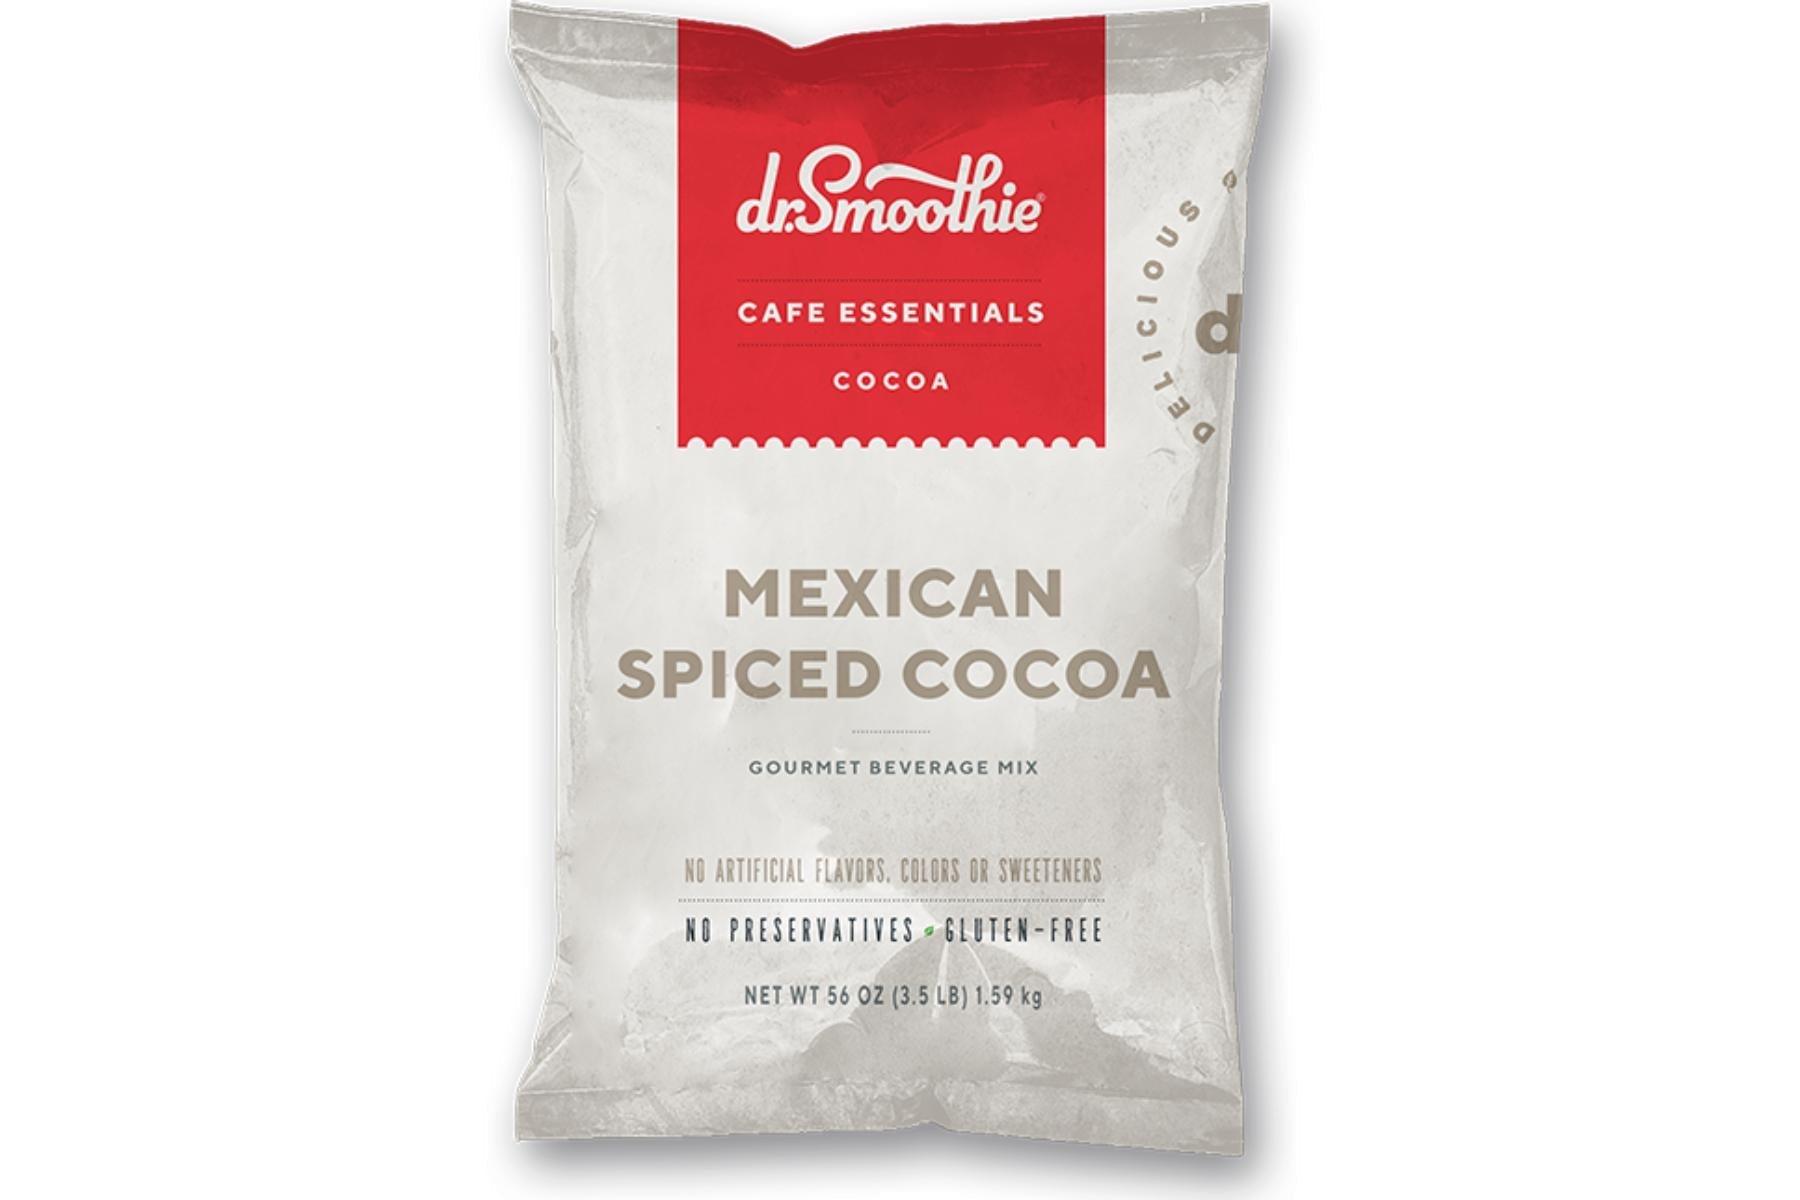 Dr. Smoothie Cafe Essentials Cocoa - 3.5lb Bulk Bag: Mexican Spiced